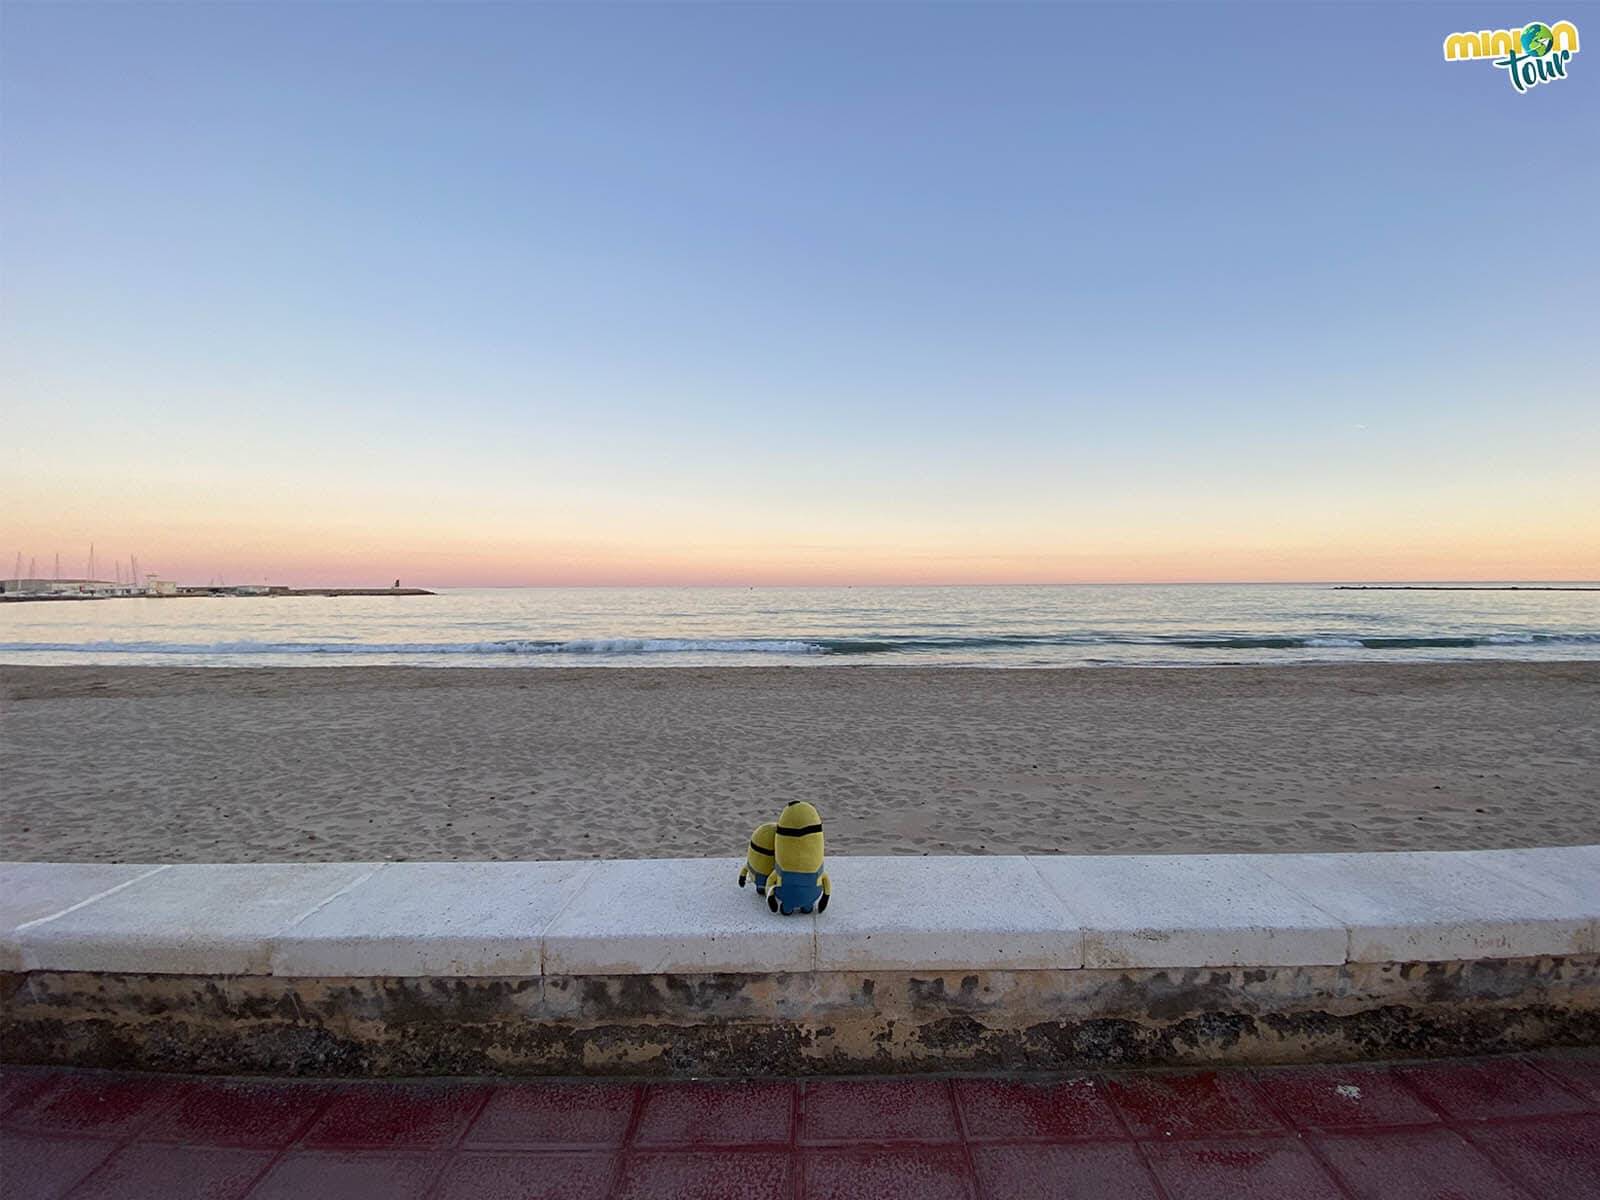 Estamos viendo la puesta de sol en la Playa de El Campello